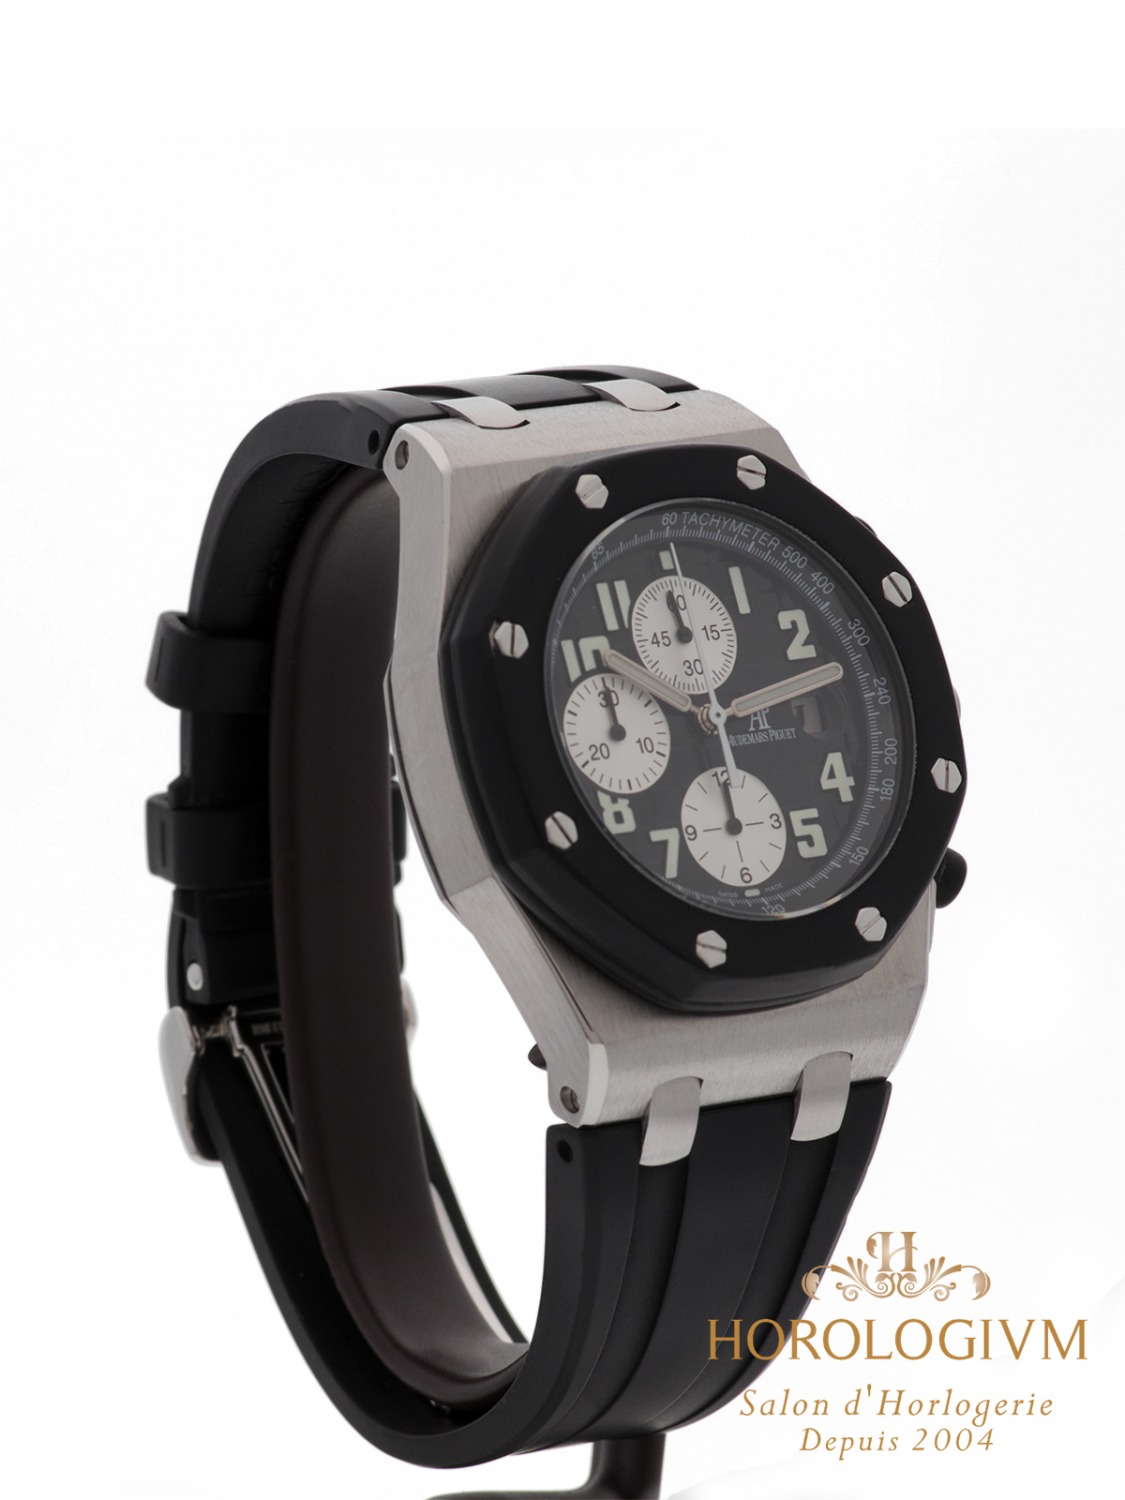 Audemars Piguet Royal Oak Offshore 42MM Ref. 25940SK.OO.D002CA.01.A watch, silver (case) and black (bezel)